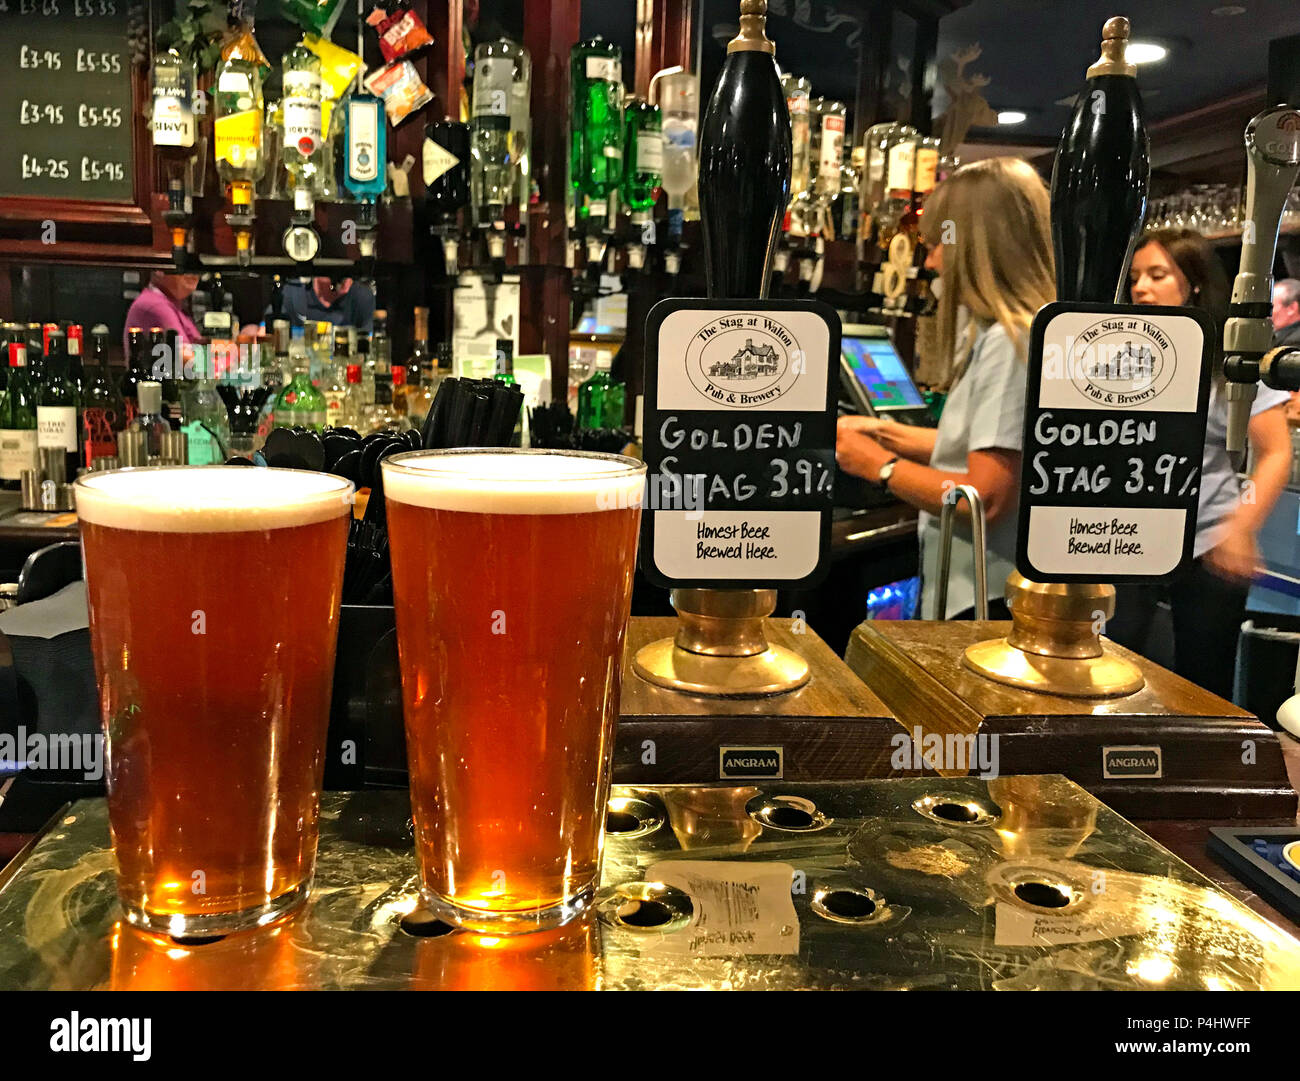 Golden Stag, bière artisanale, brassée au Stag, Lower Walton, Warrington, Cheshire, Angleterre, Royaume-Uni, deux pintes sur un bar Banque D'Images